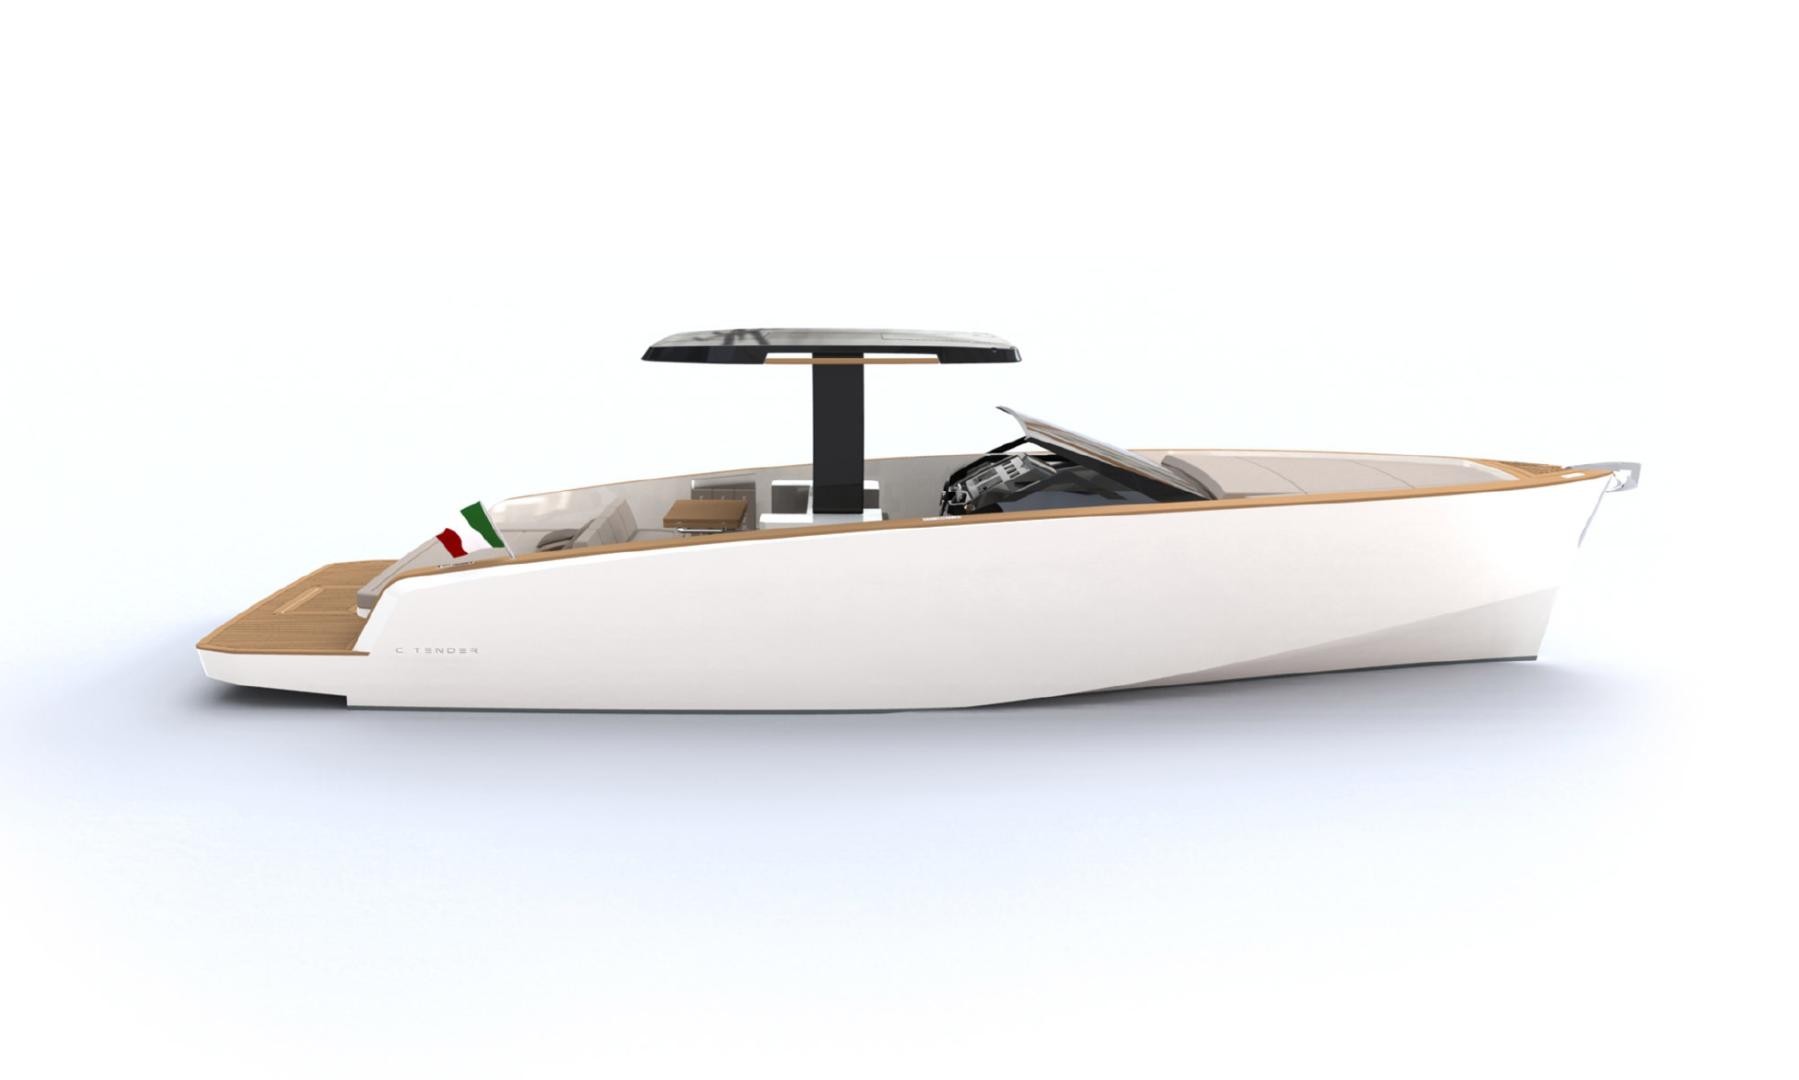 Sarà presentata in anteprima mondiale al Cannes Yachting Festival la linea di lifestyle yacht made in Italy nata dall’esperienza Custom BOAT explorer yacht